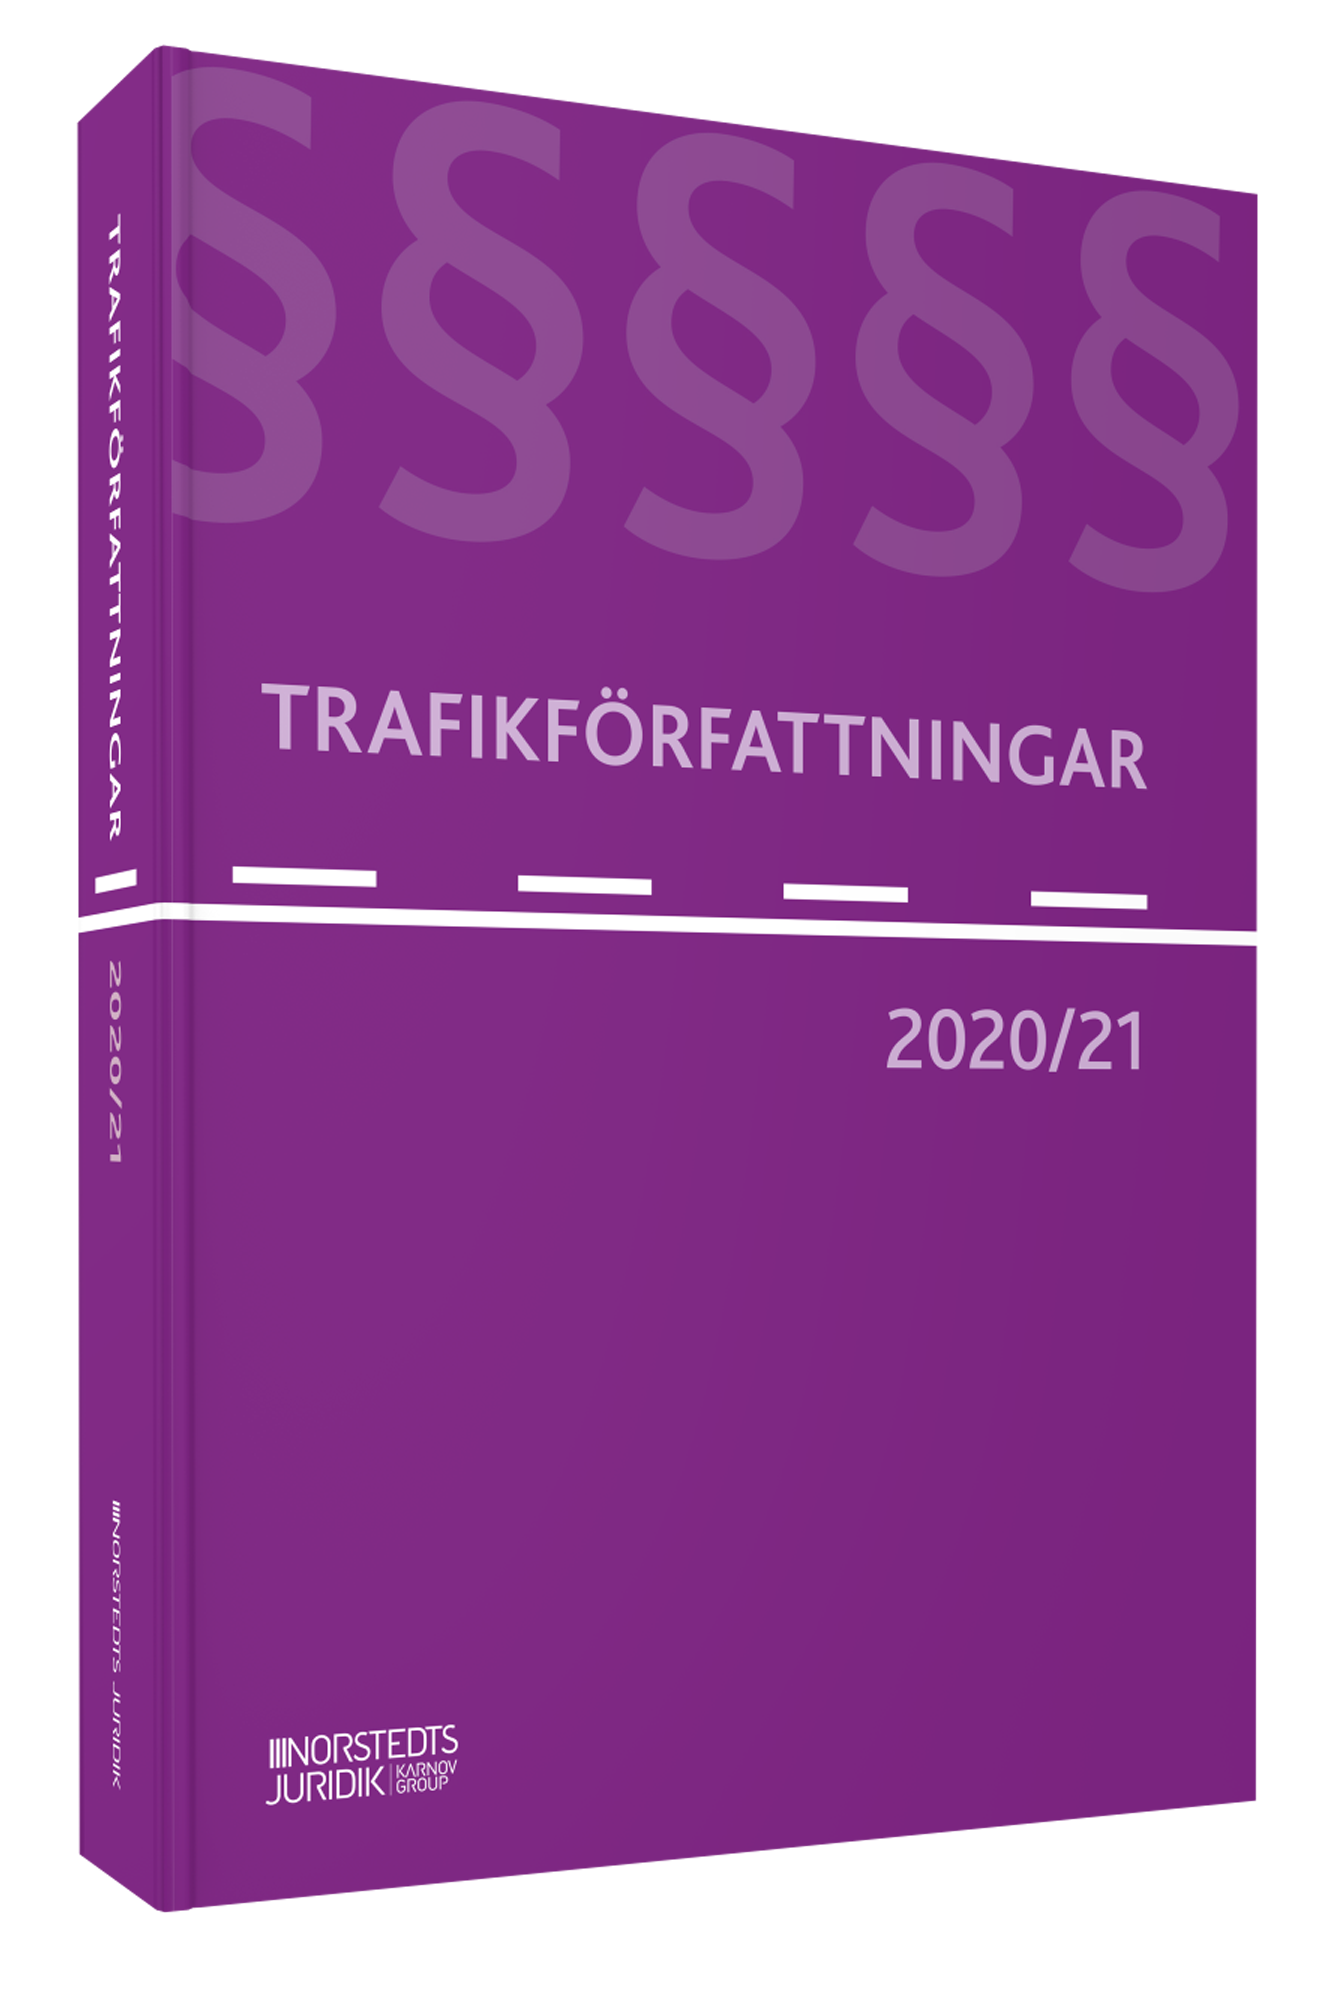 Trafikförfattningar 2020/21